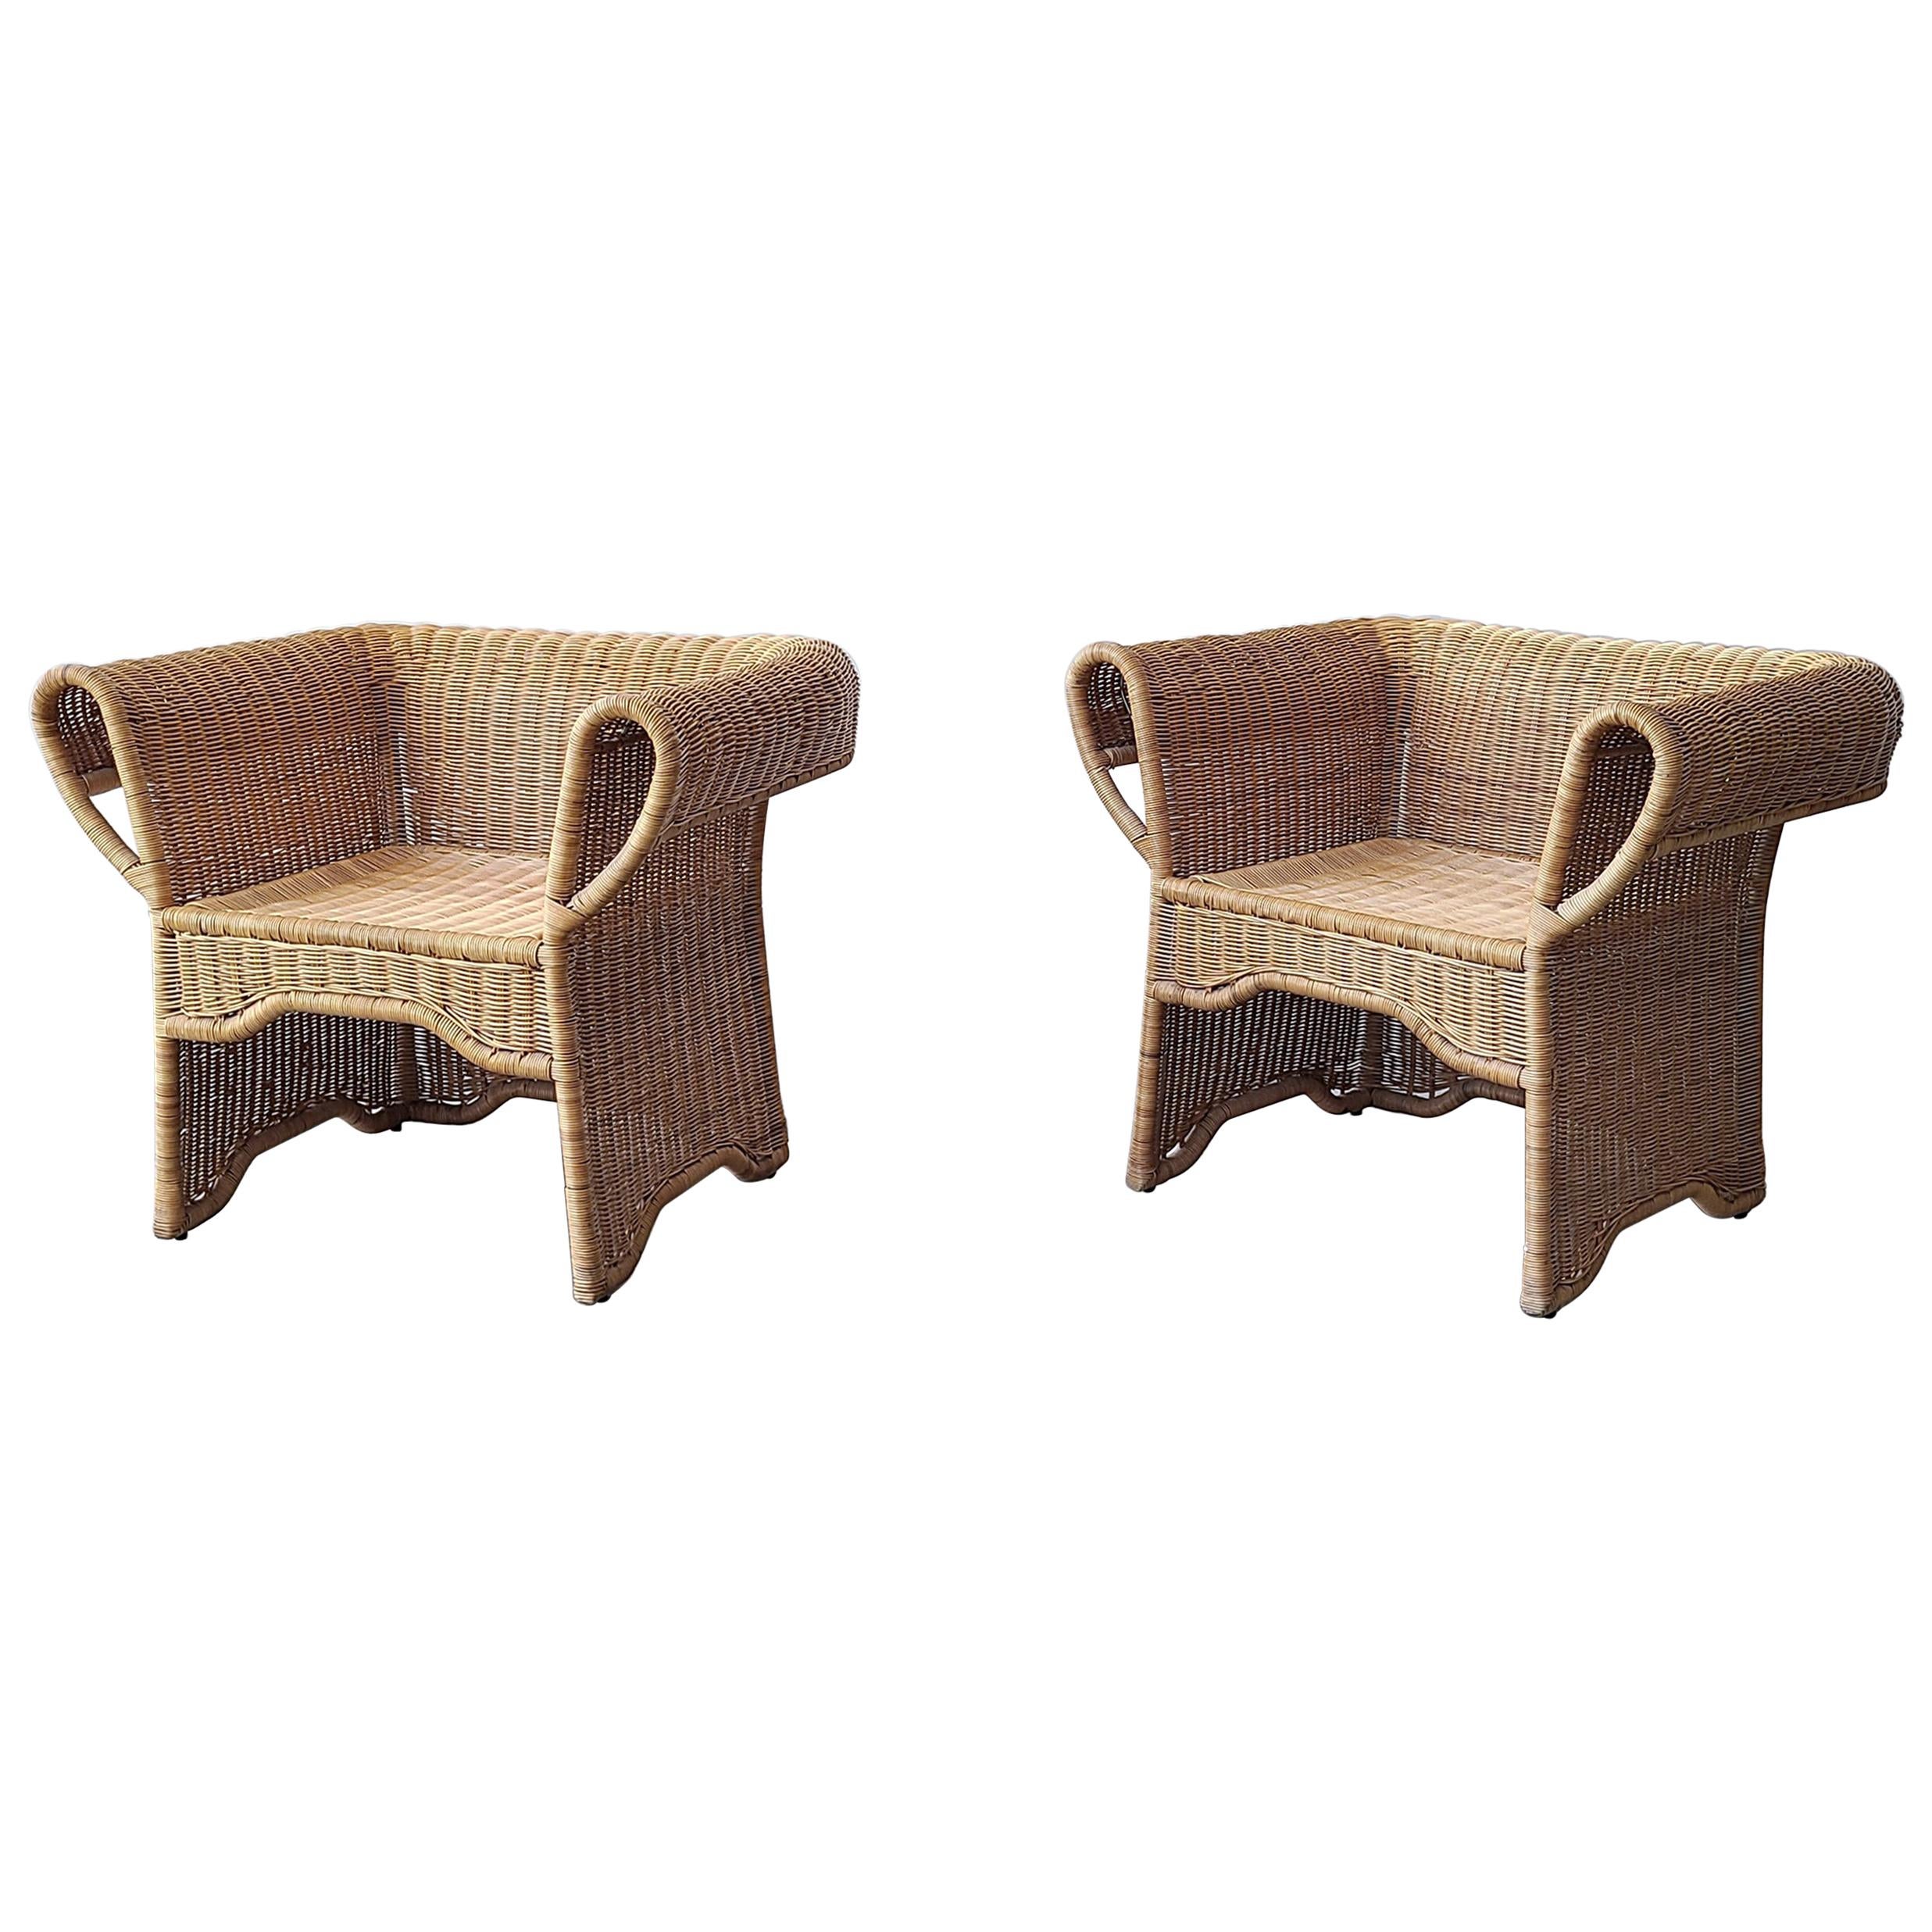 Pair of Vintage Arurog Wicker Chairs